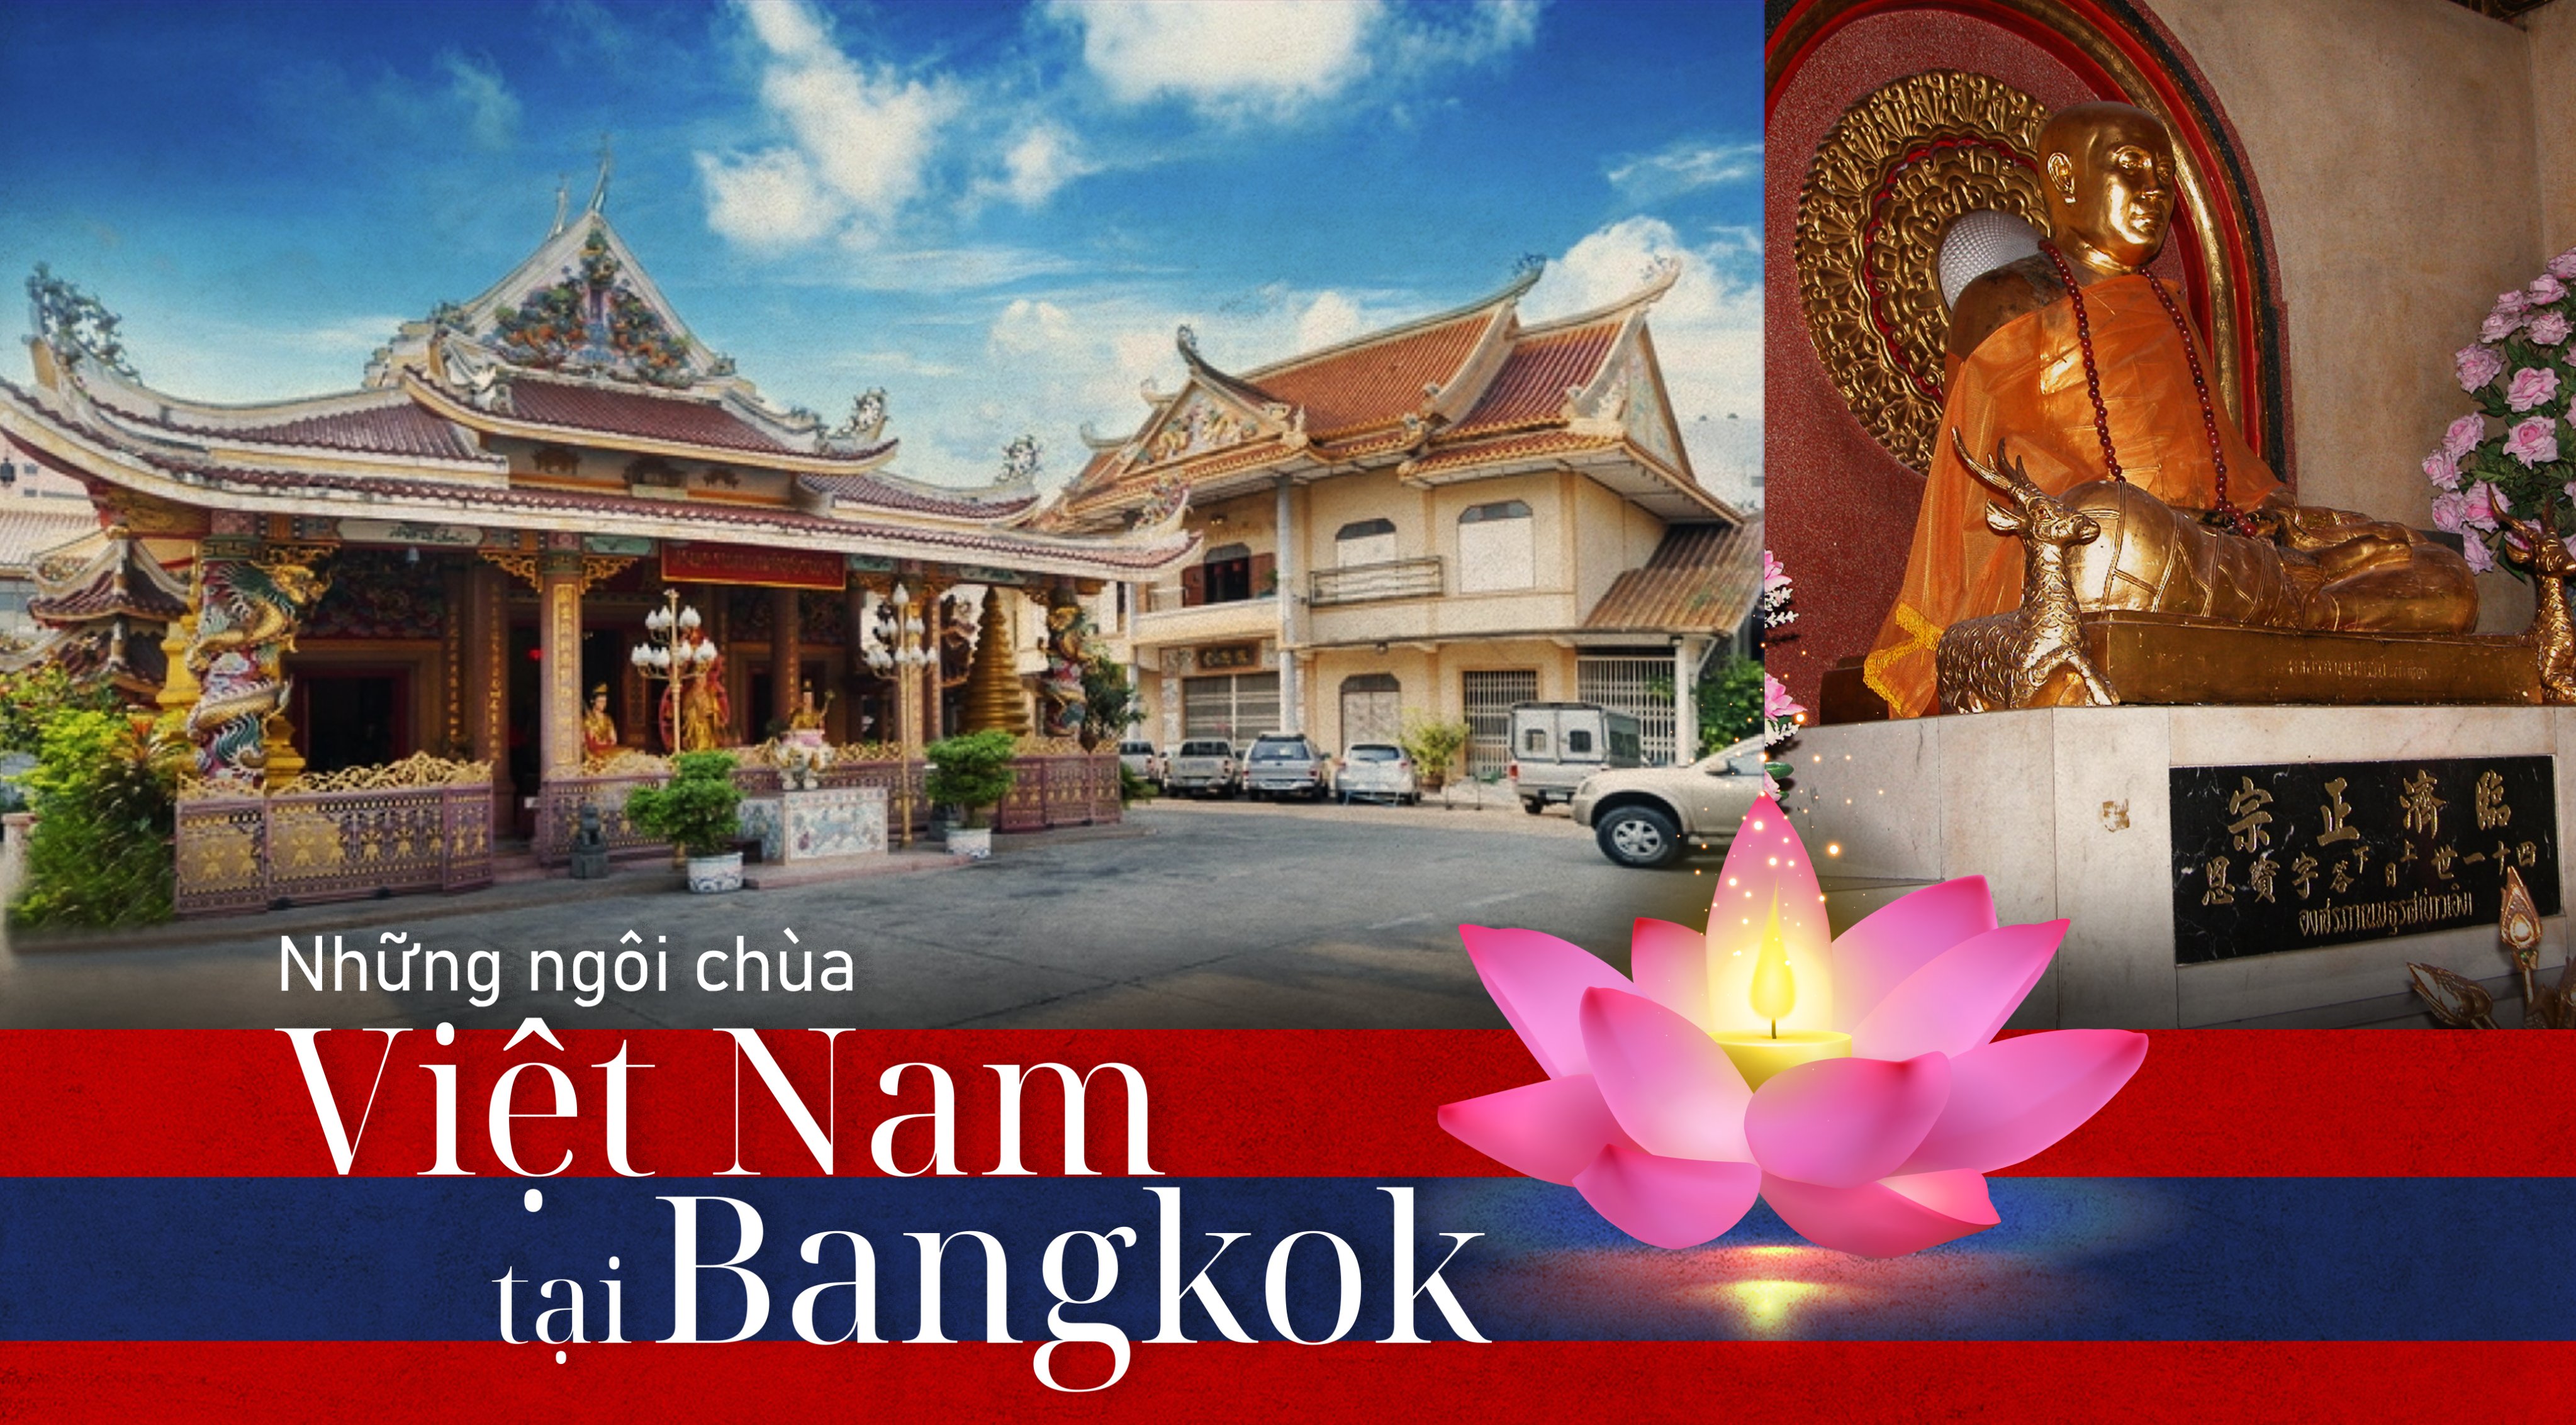 Hiện thủ đô Bangkok đang có 7 ngôi chùa Việt Nam và khoảng 20 ngôi chùa khác tại các vùng trên khắp đất nước.